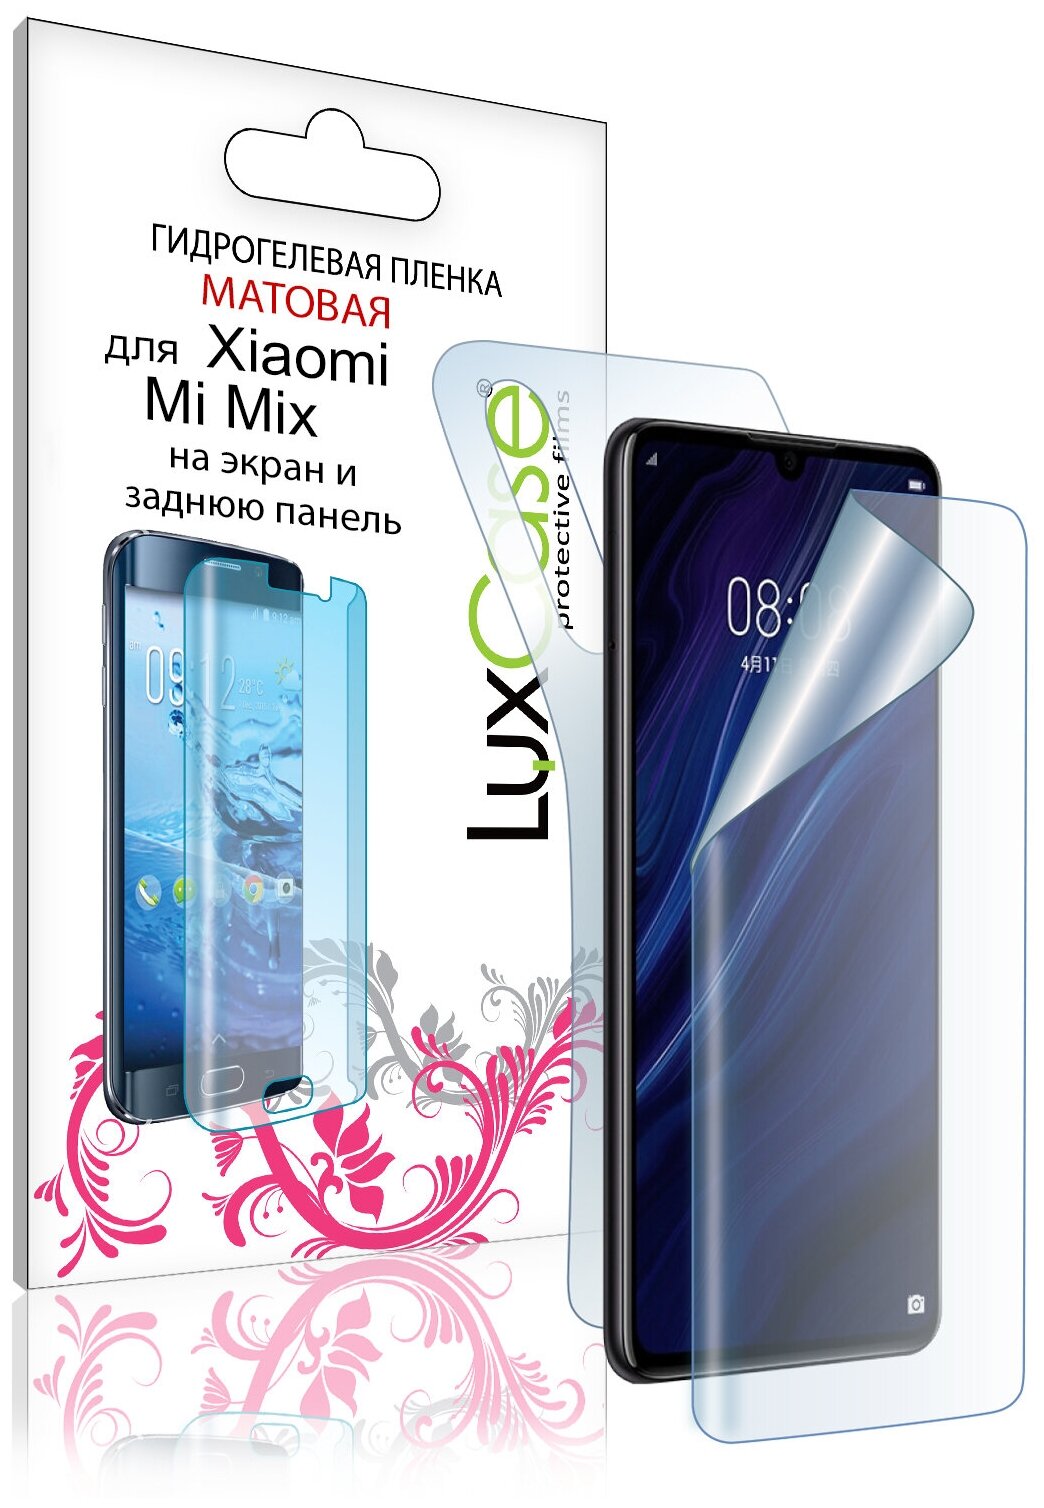 Защитная гидрогелевая пленка для Xiaomi Mi Mix, на экран и заднюю поверхность, Матовая